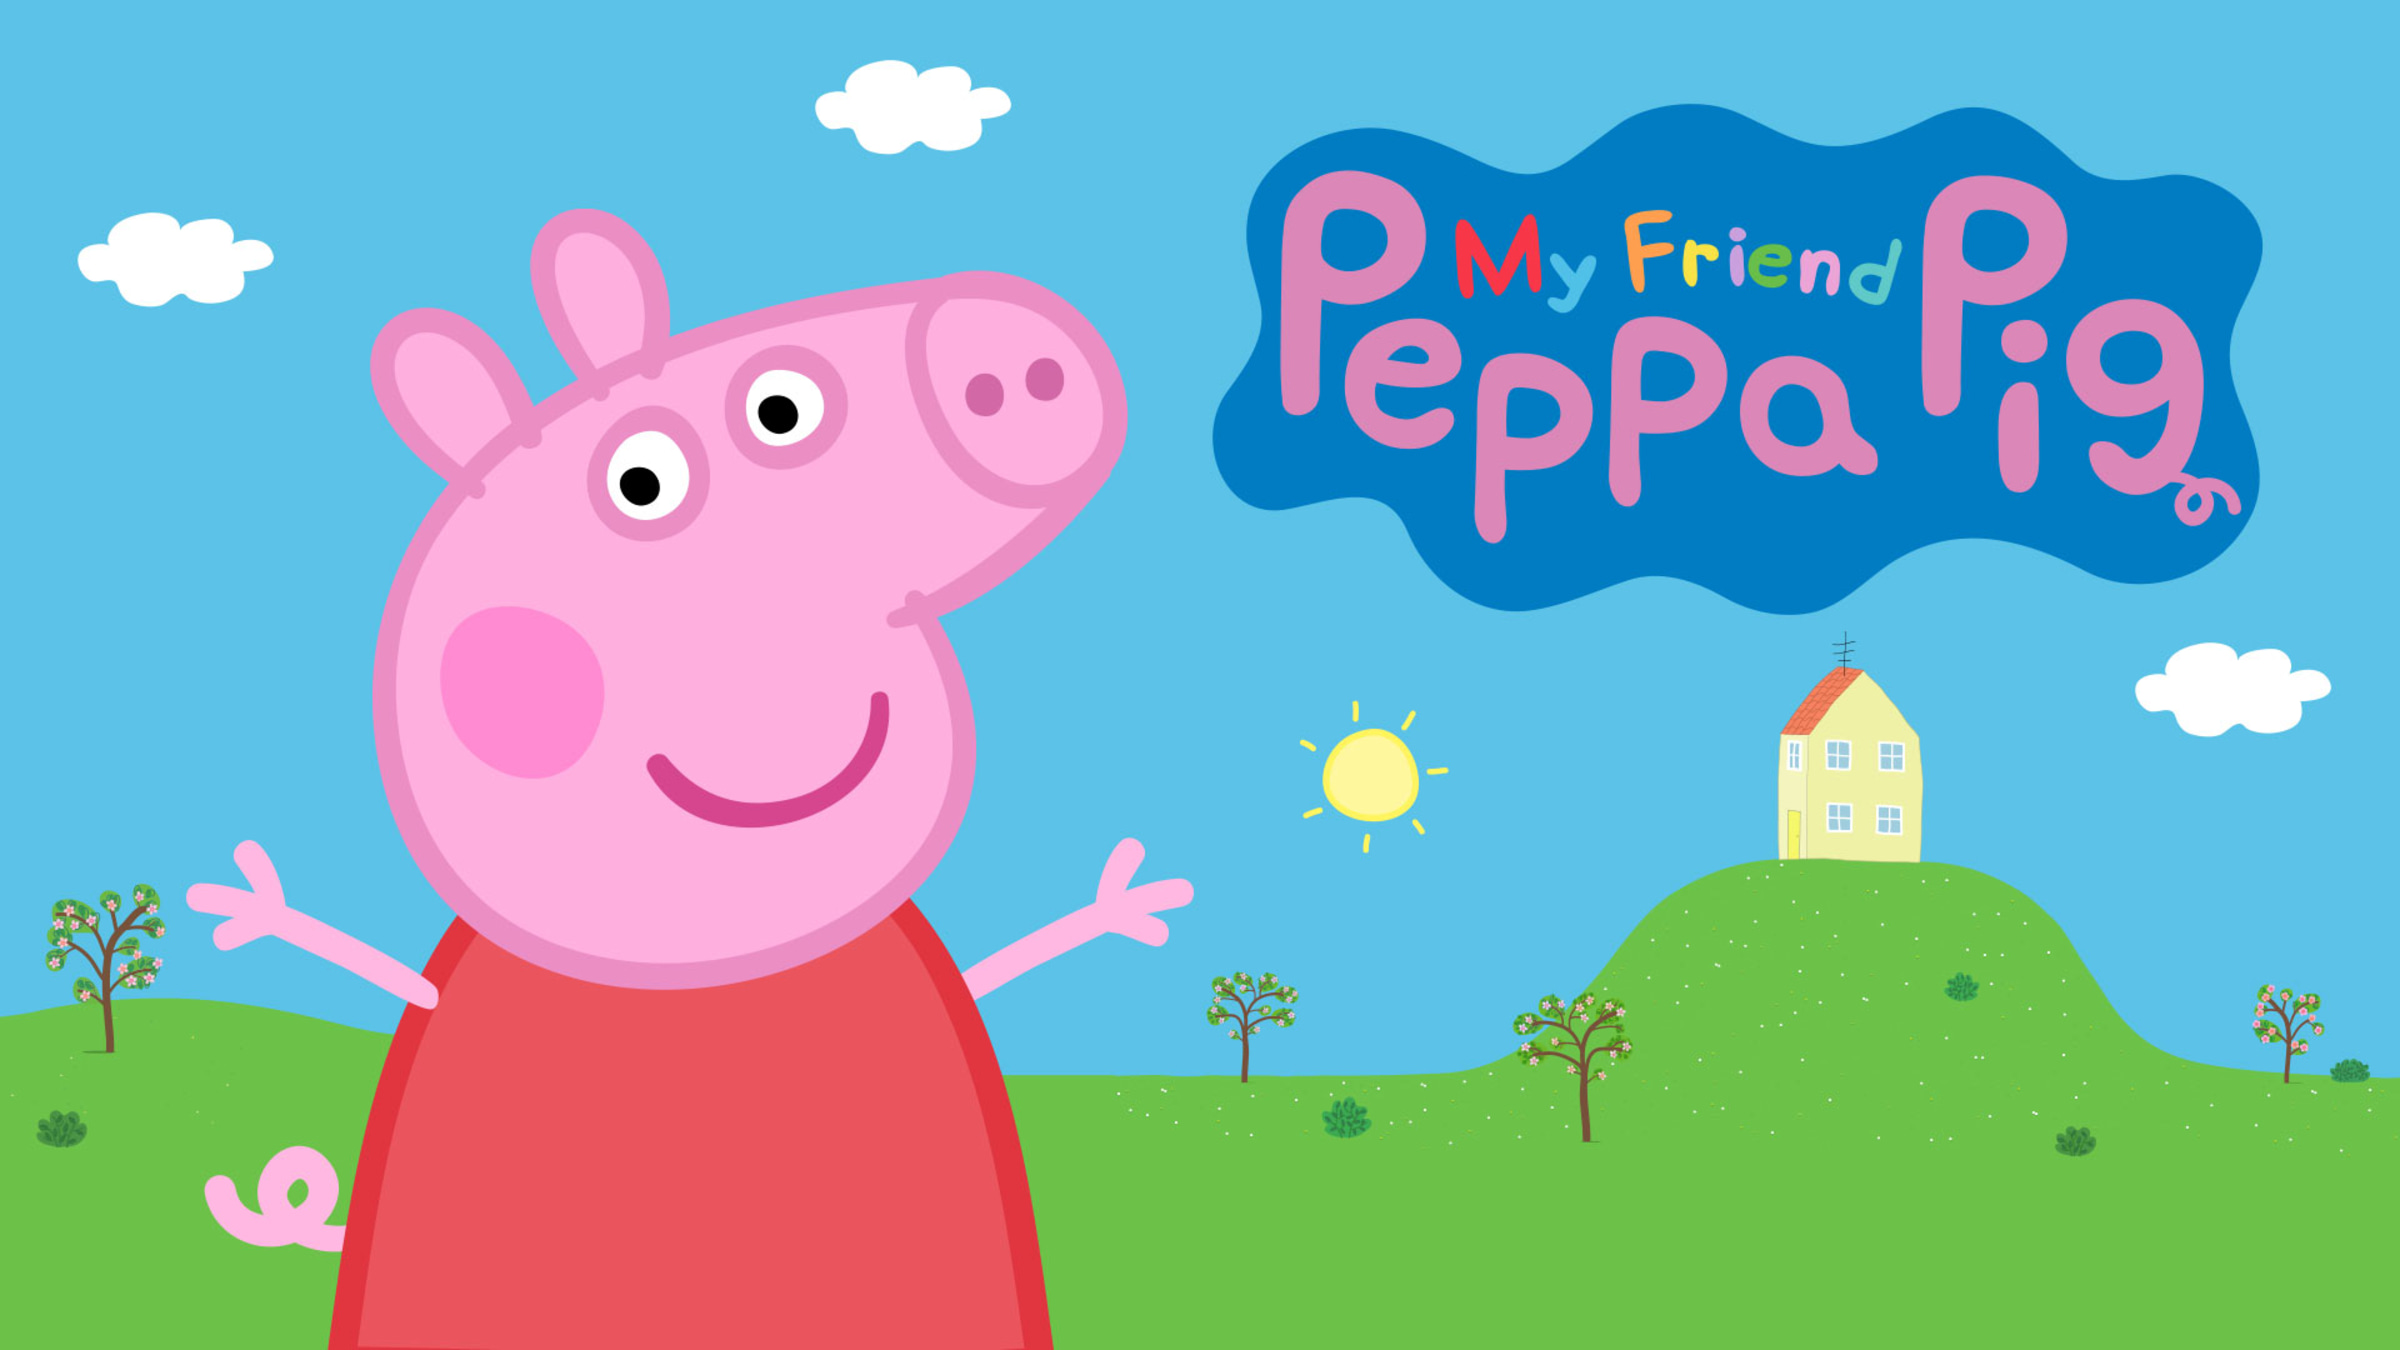 assista online de graça episódios completos da Peppa Pig dublados em português do Brasil. Aproveite e se divirta.